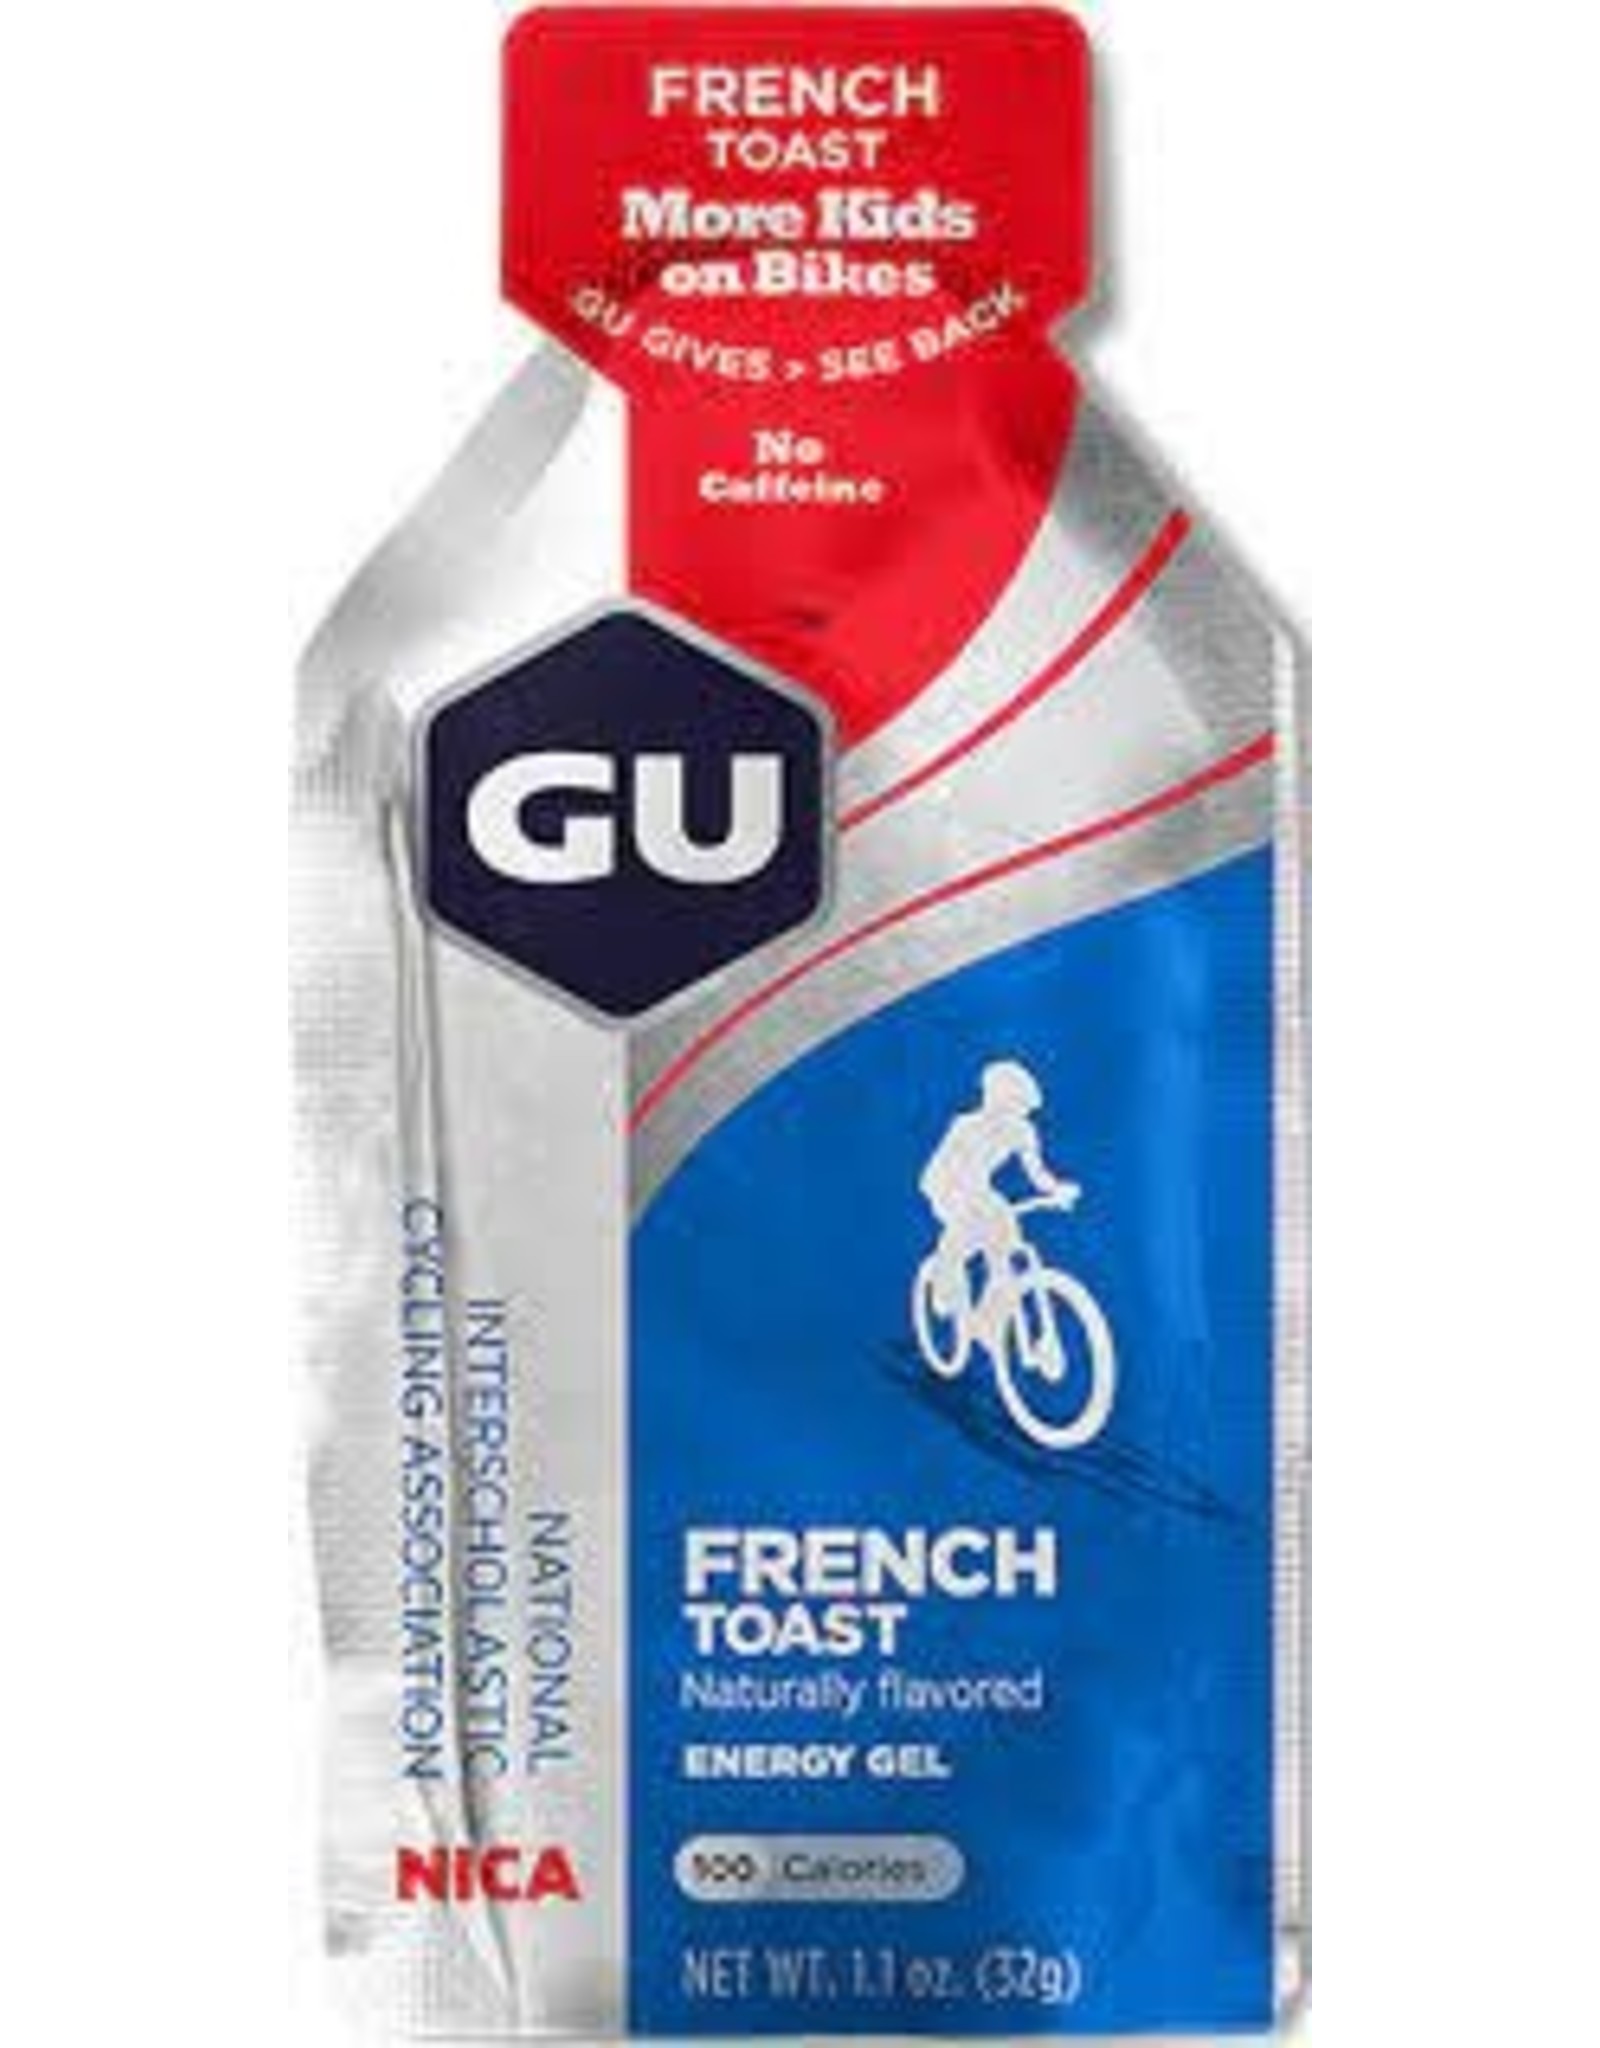 GU, Energy Gel, French Toast no caf